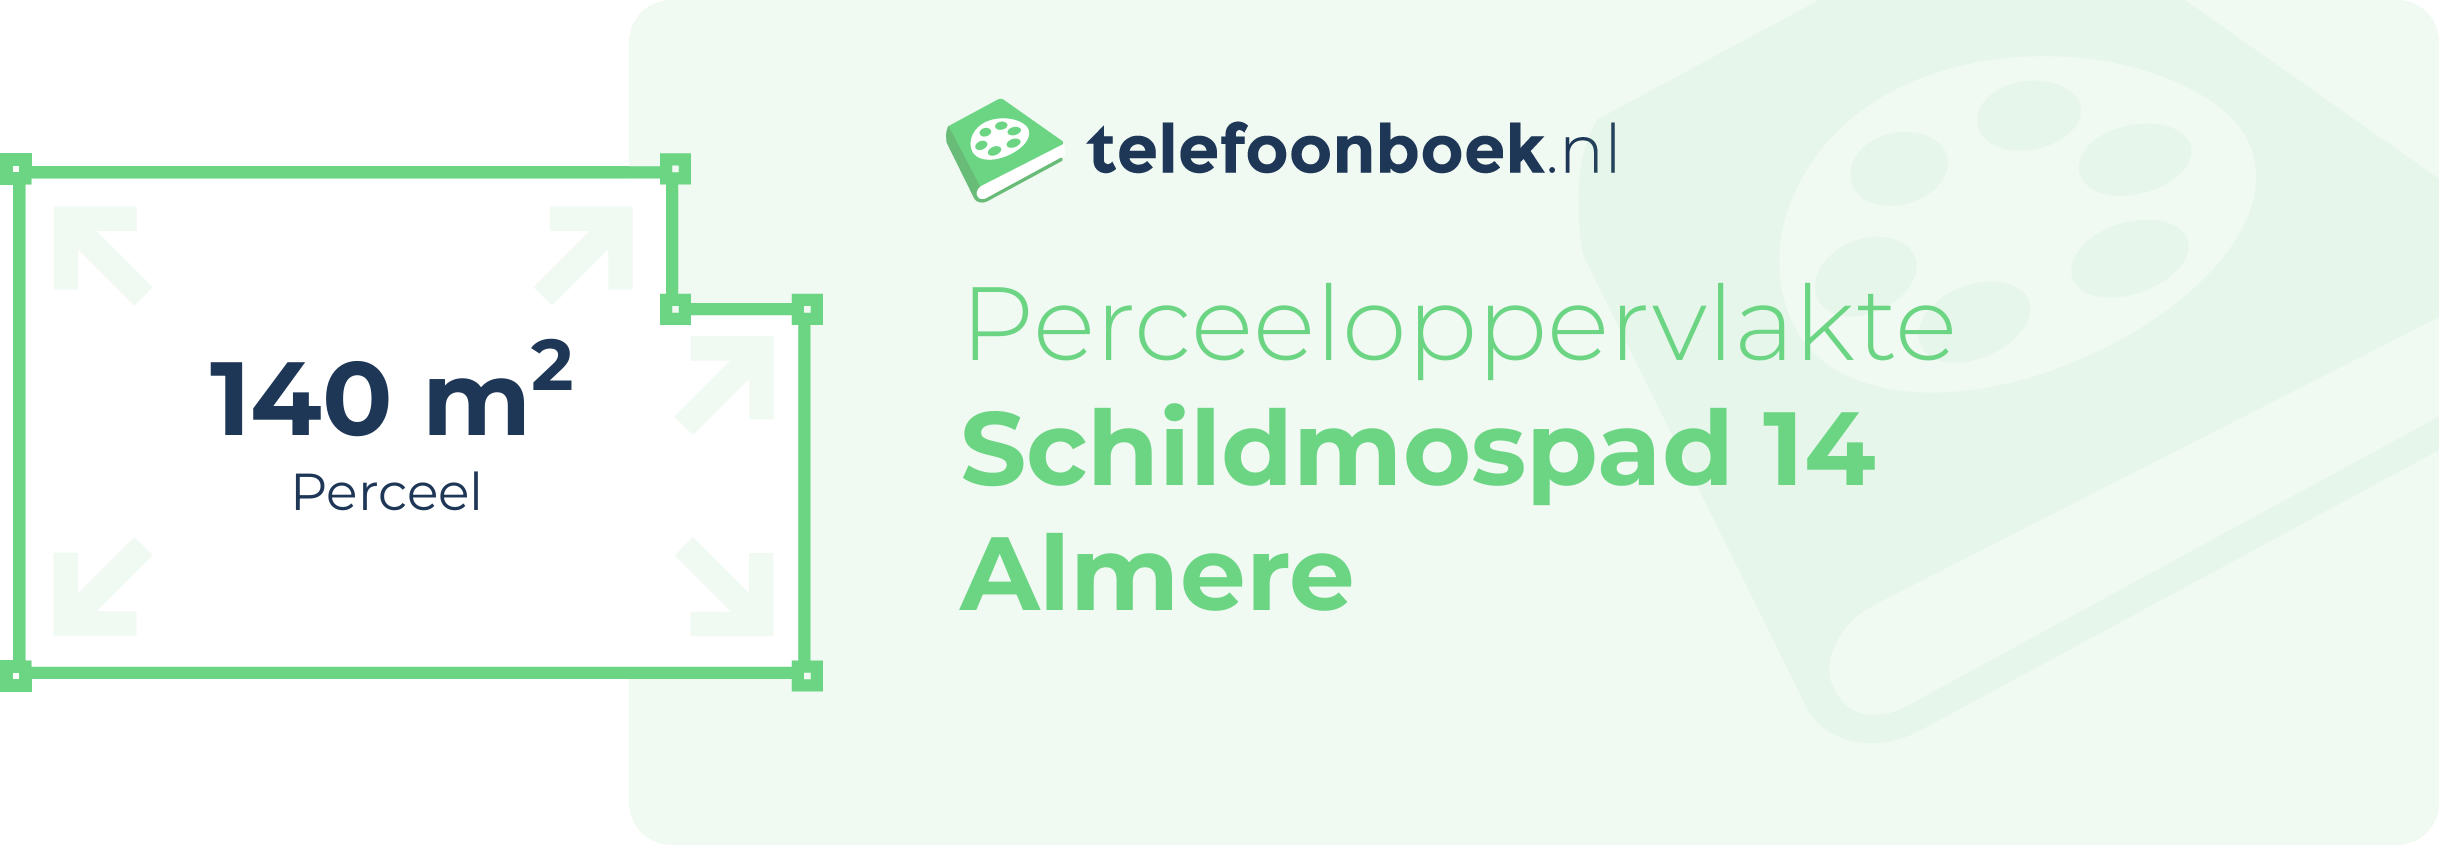 Perceeloppervlakte Schildmospad 14 Almere